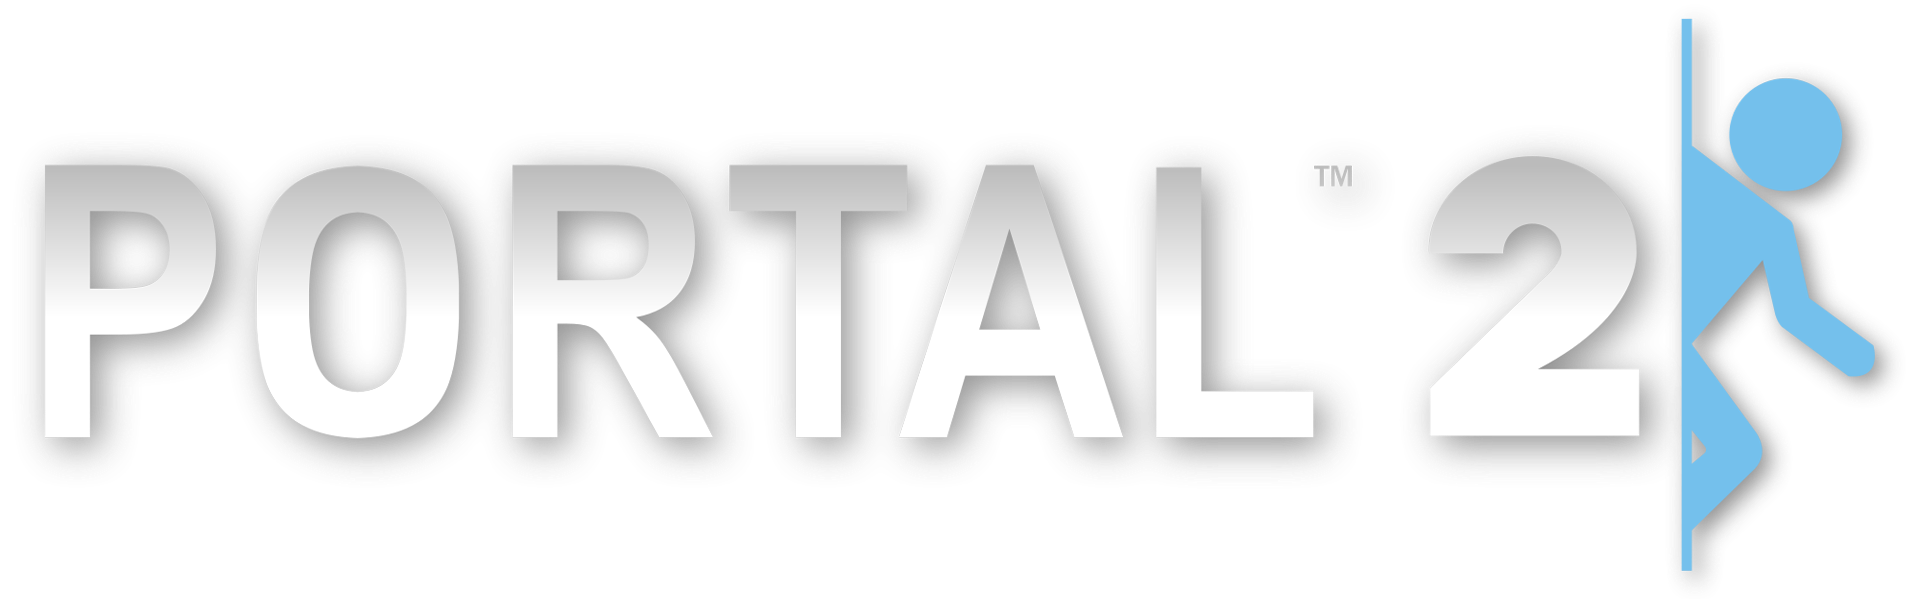 Portal 2 free to play фото 110